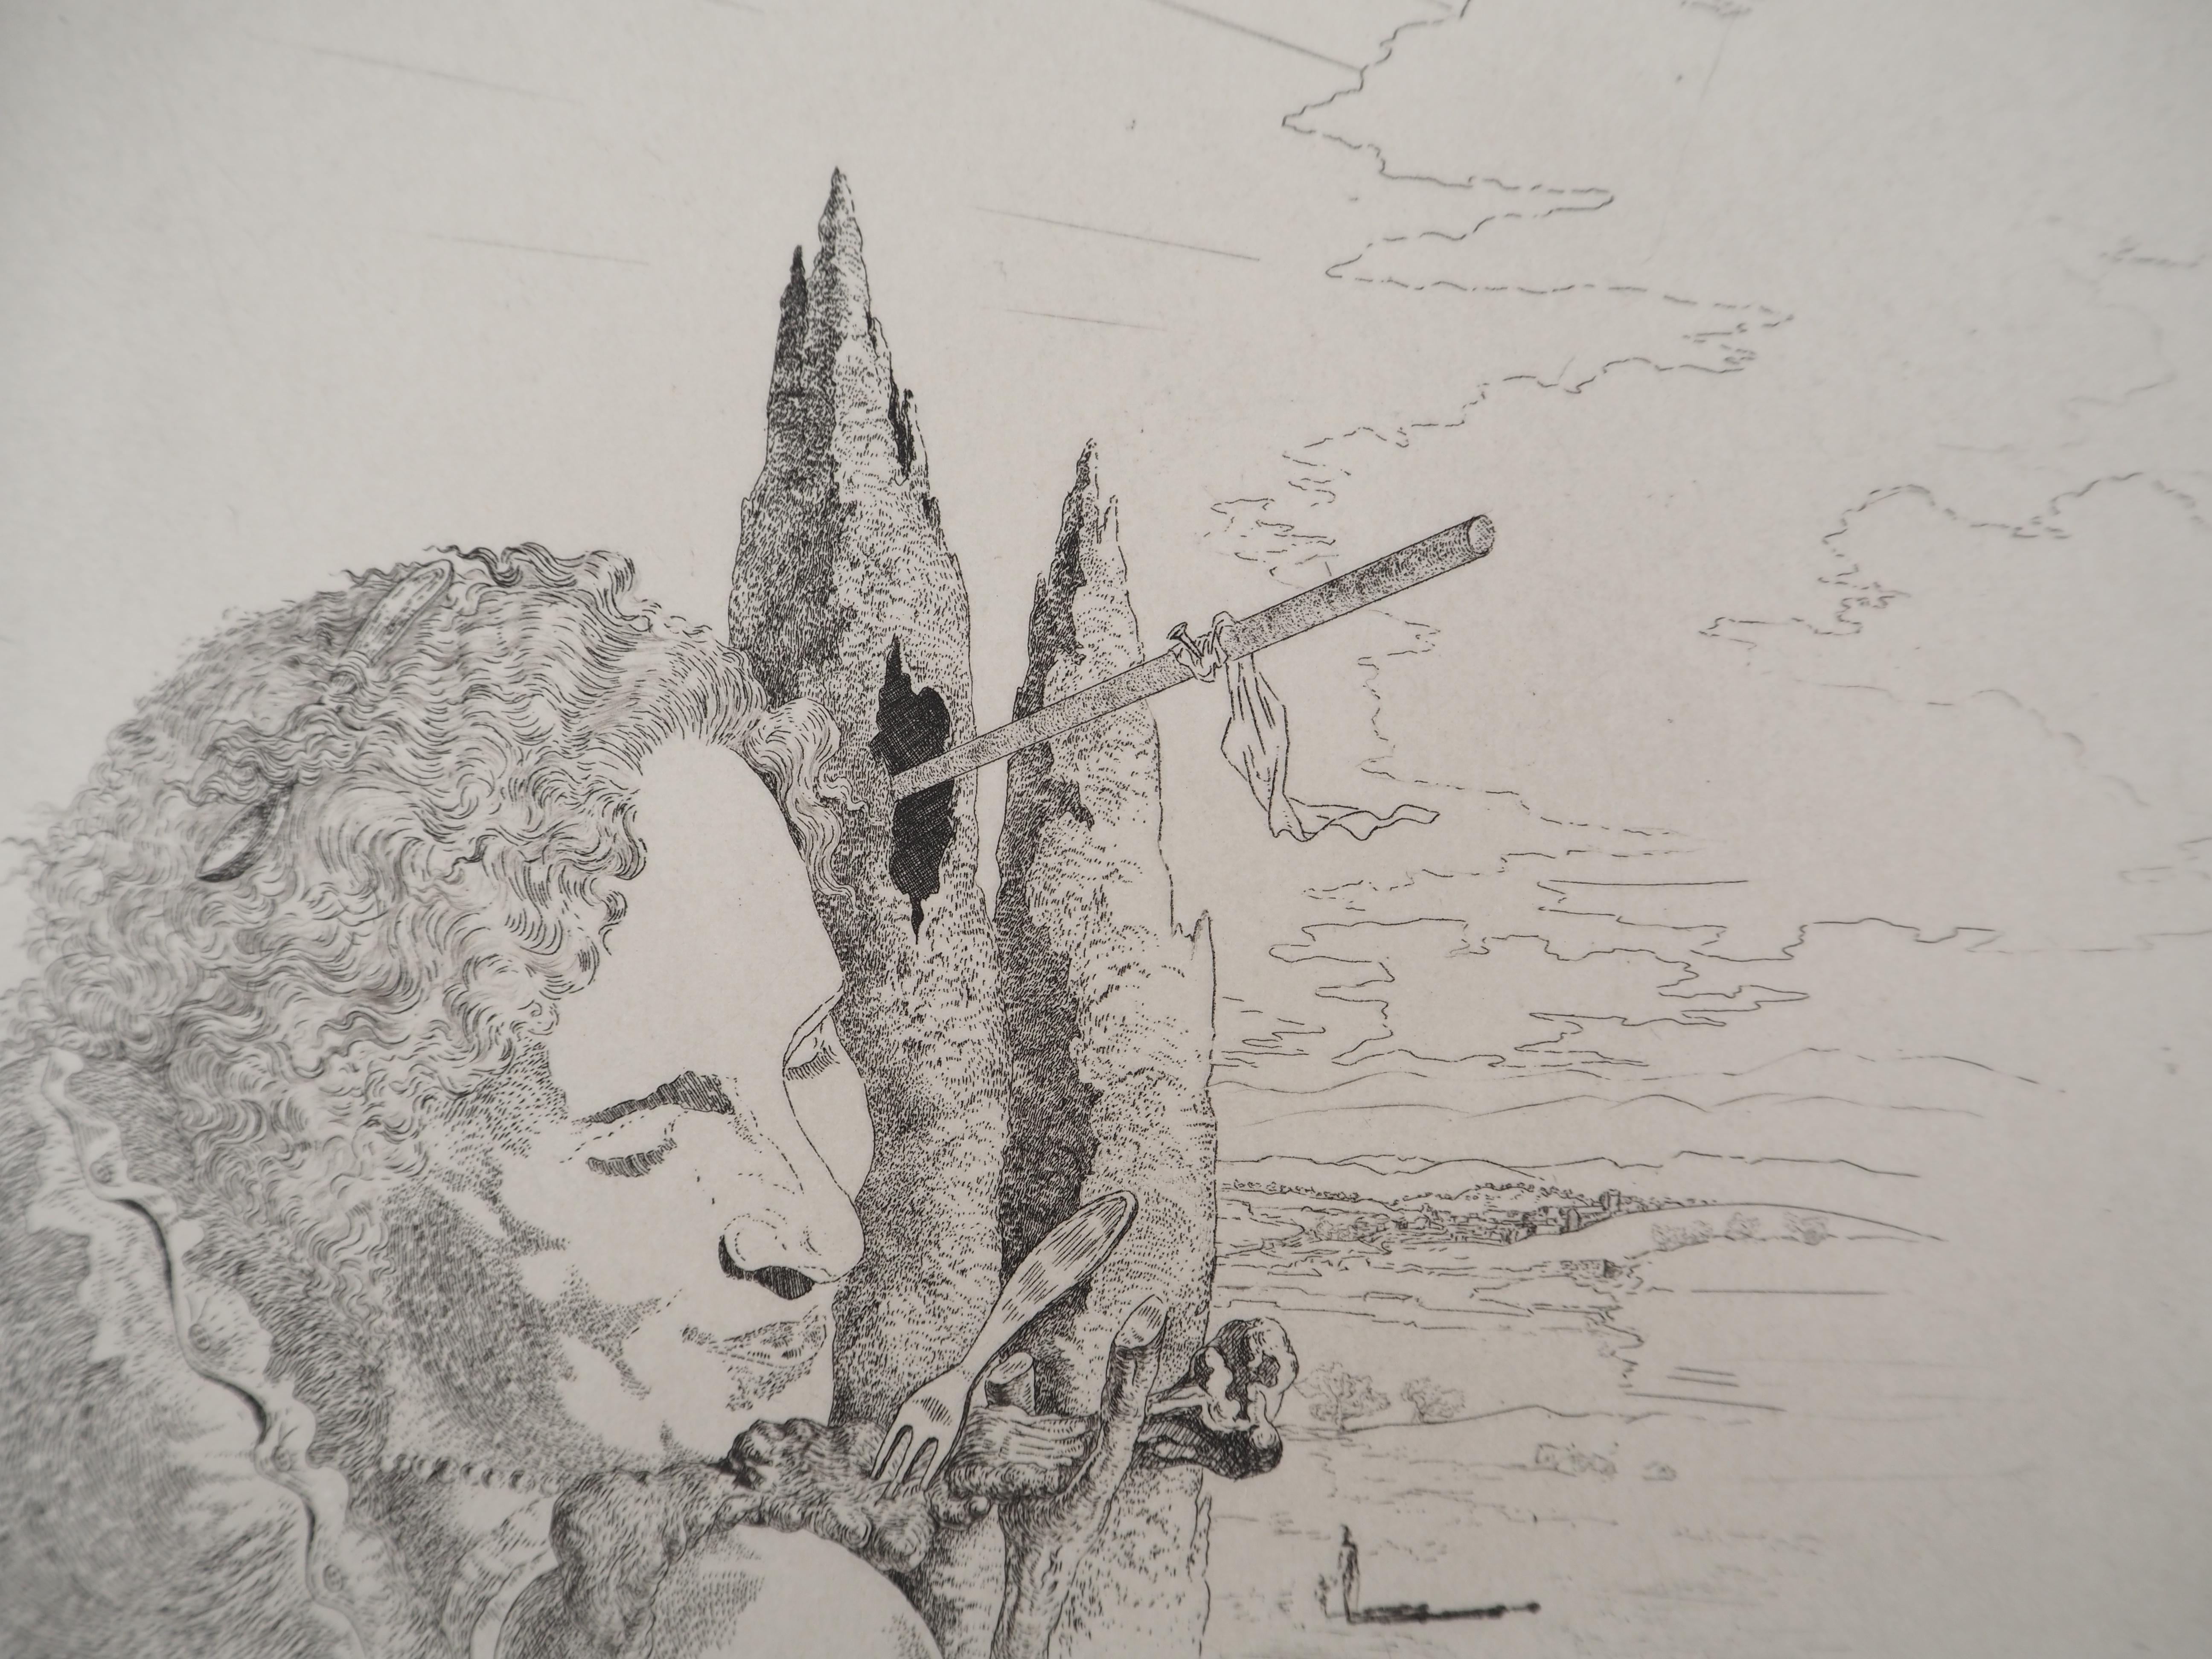 Salvador Dali
Gala de l'amour, 1975

Gravure originale 
Signé au crayon 
Limité à 100 exemplaires (Ici numéroté 52)
Sur vélin d'Arches  32.5 x 25 cm (c. 12.7 x 9.8 in)

INFORMATION : Cette gravure fait partie de la série 